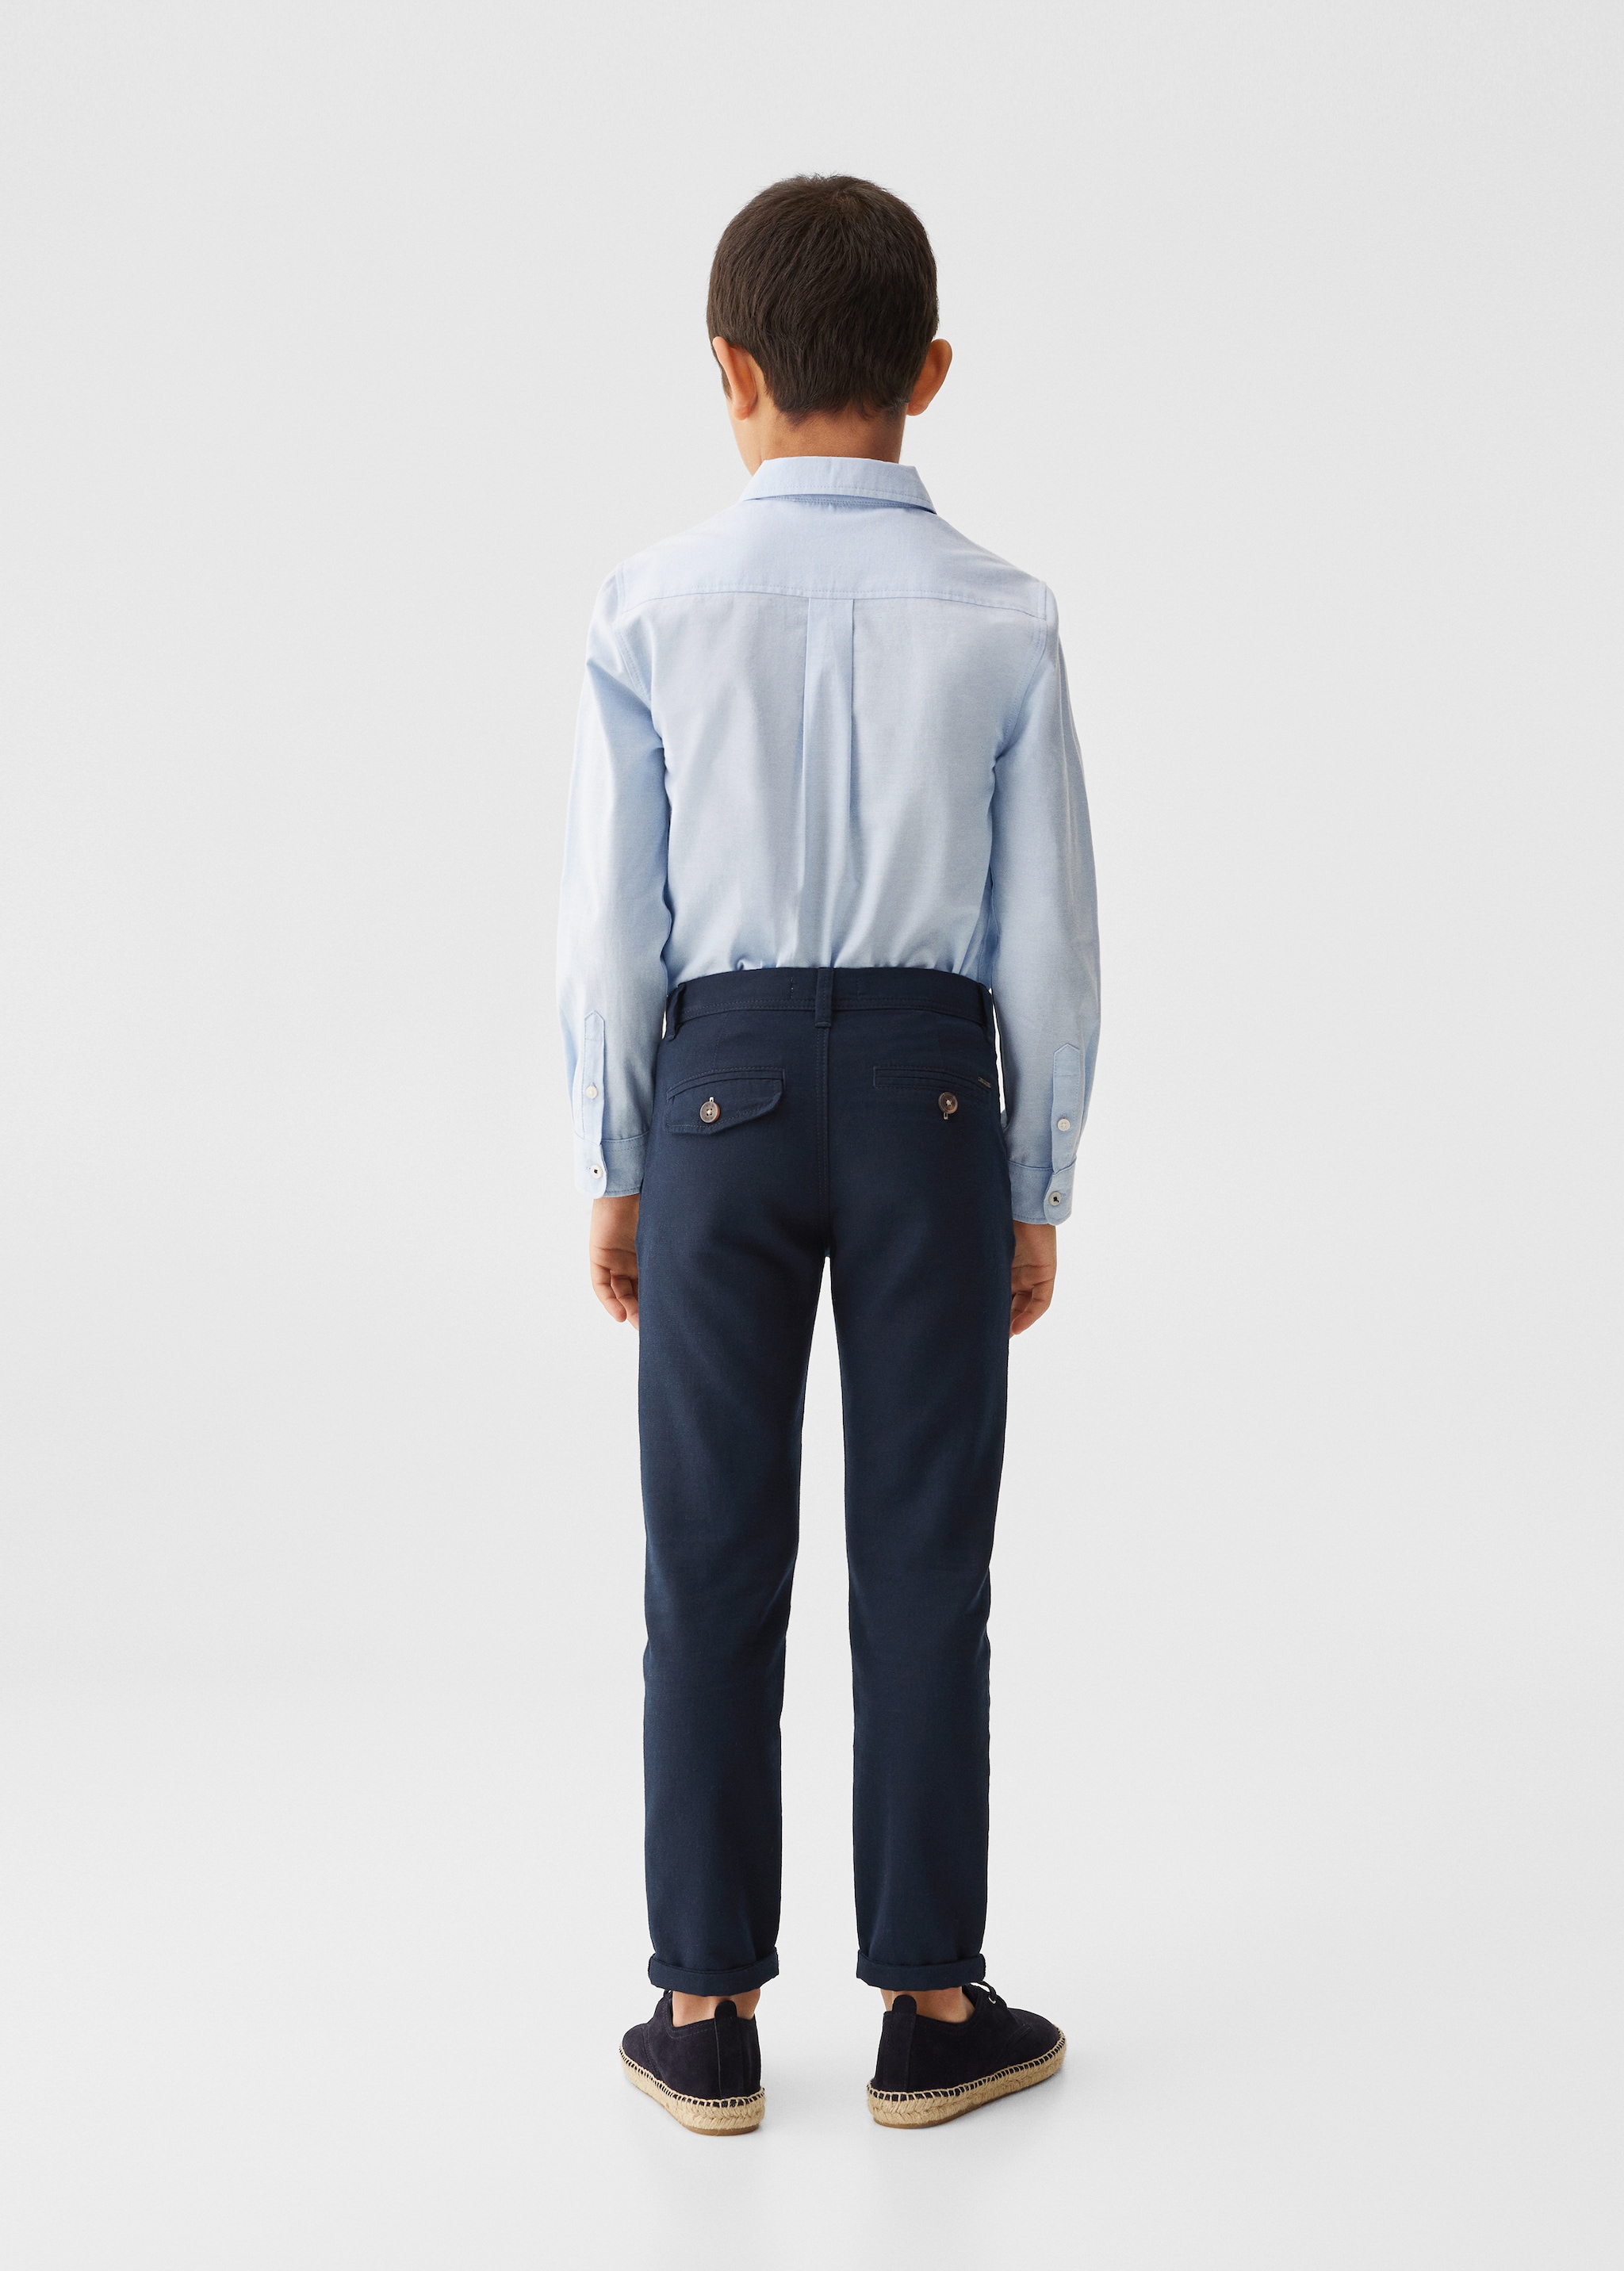 Pantalons xinesos lli - Revers de l'article